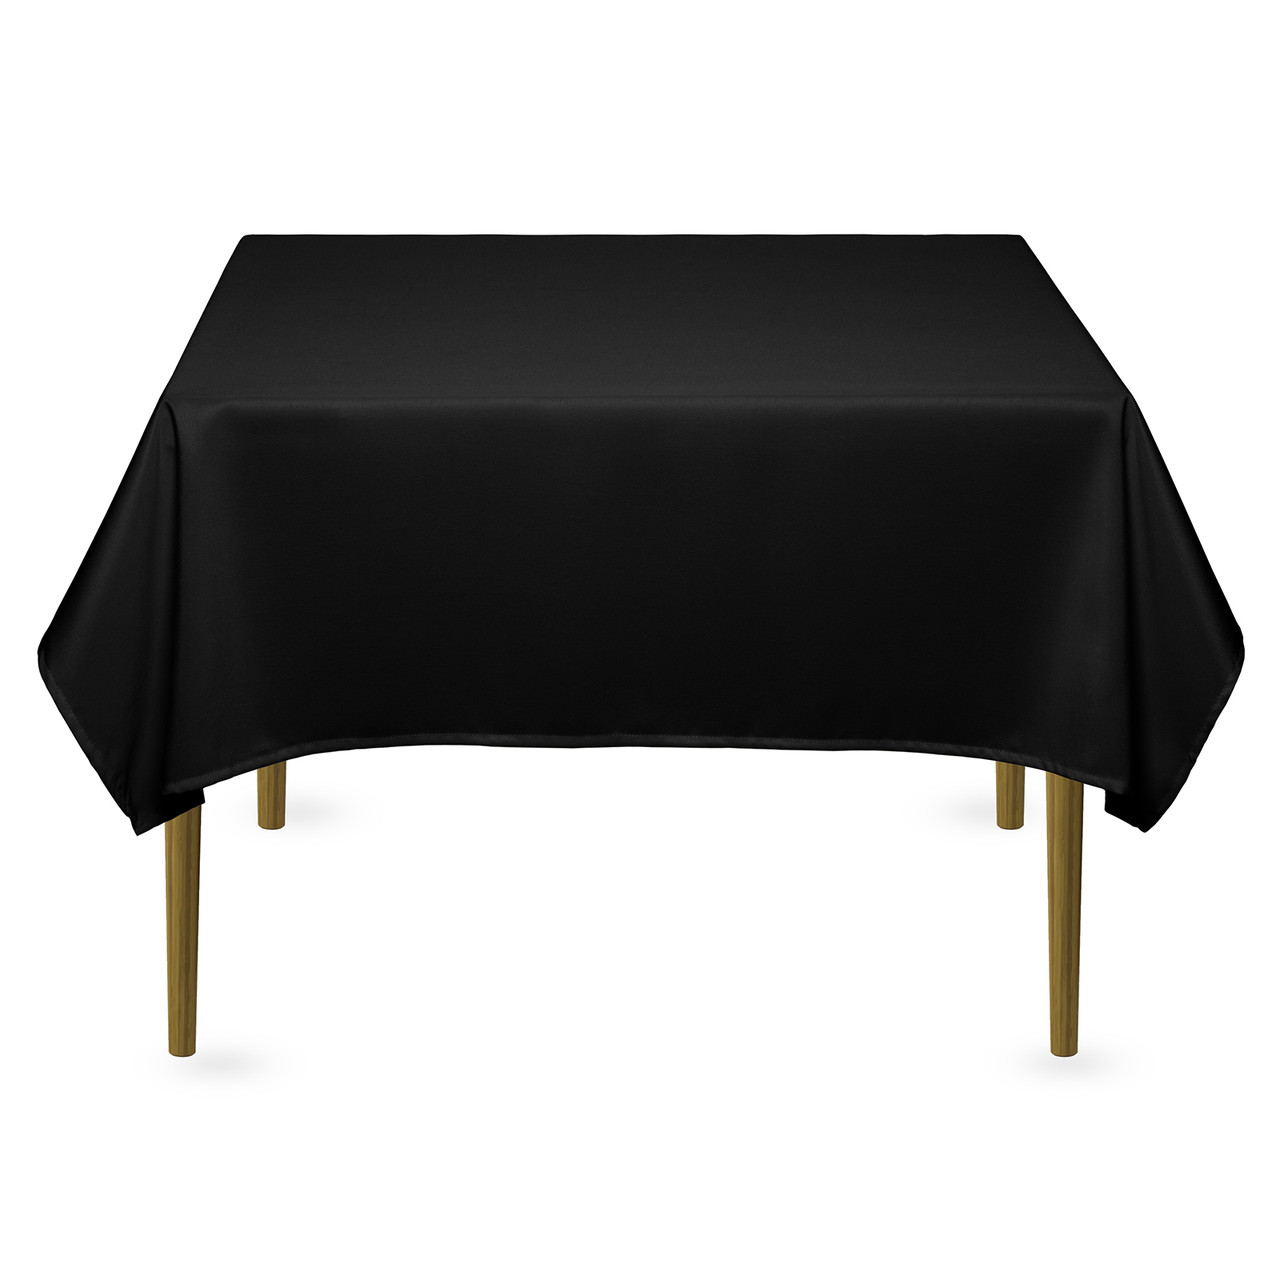 Скатертина квадратна на обідній стіл габардинова чорна Atteks - 1417